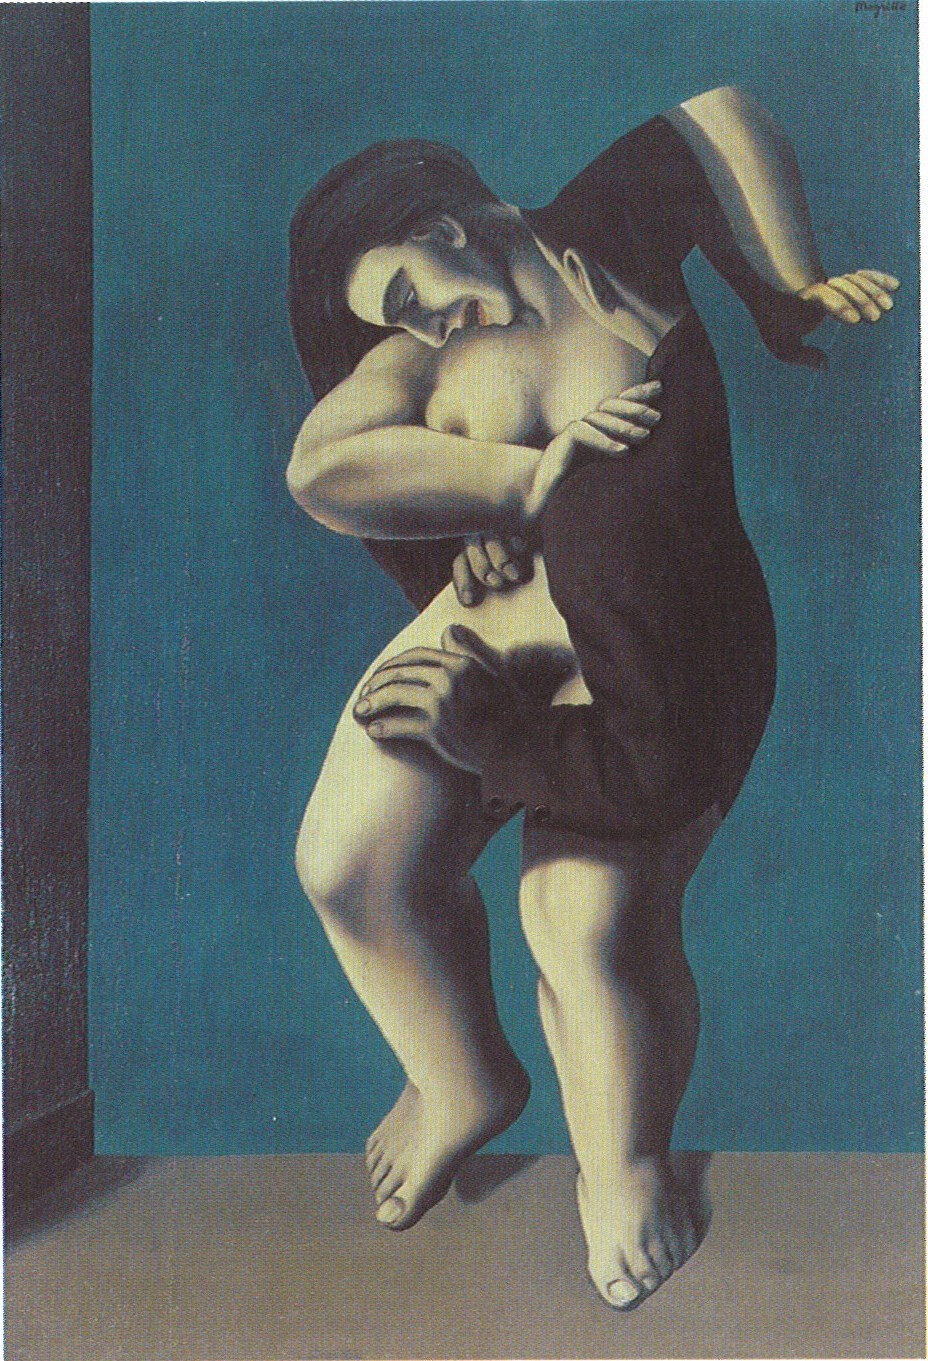 René Magritte. _Les Jours gigantesques (The Titanic Days)_. Paris, 1928